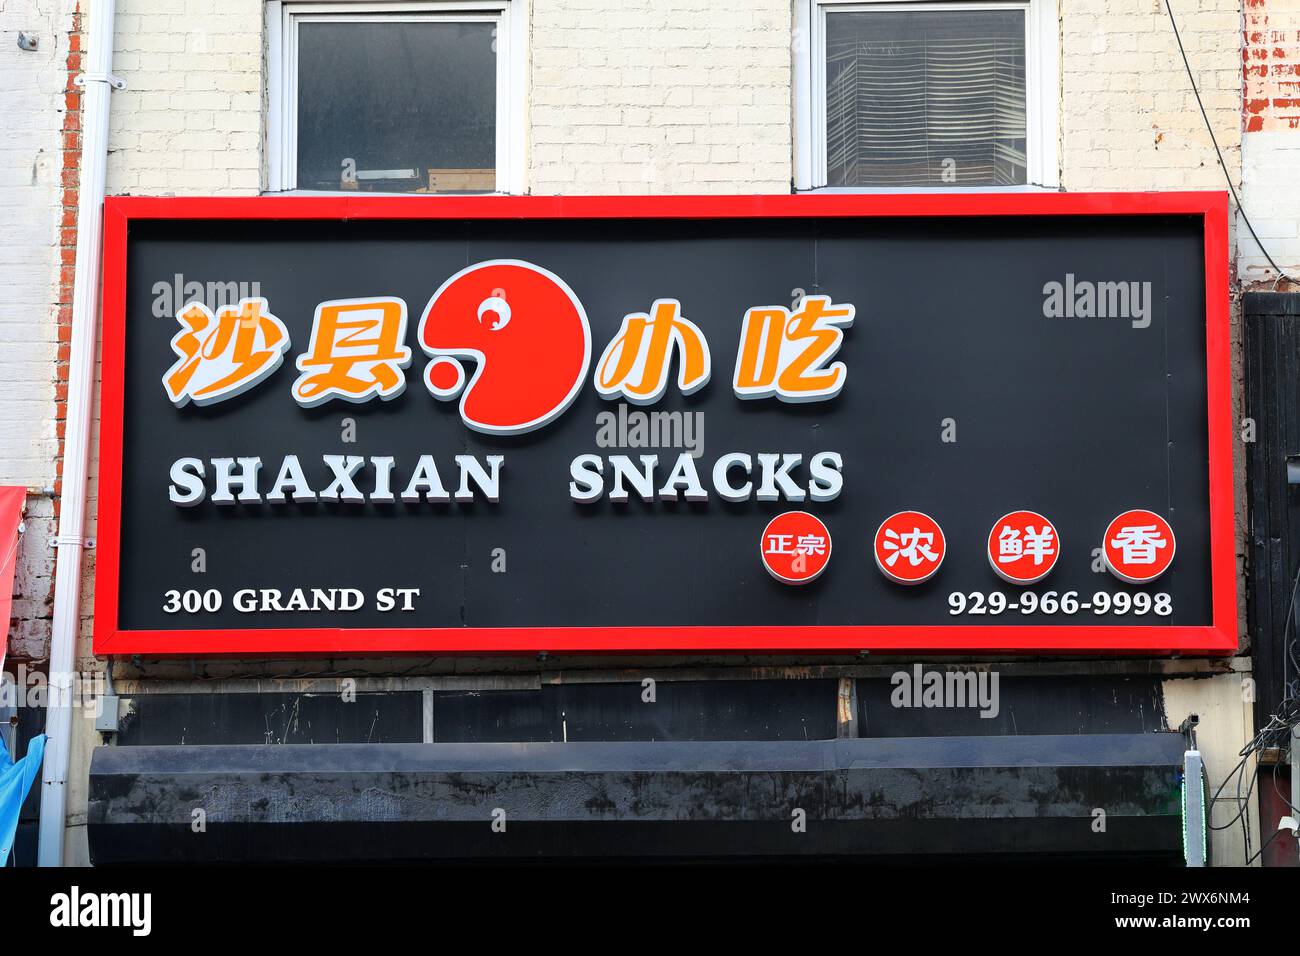 Signalétique dans un magasin Shaxian snacks 沙县小吃 Fujian Chinese fast food franchisé à New York 紐約 Banque D'Images